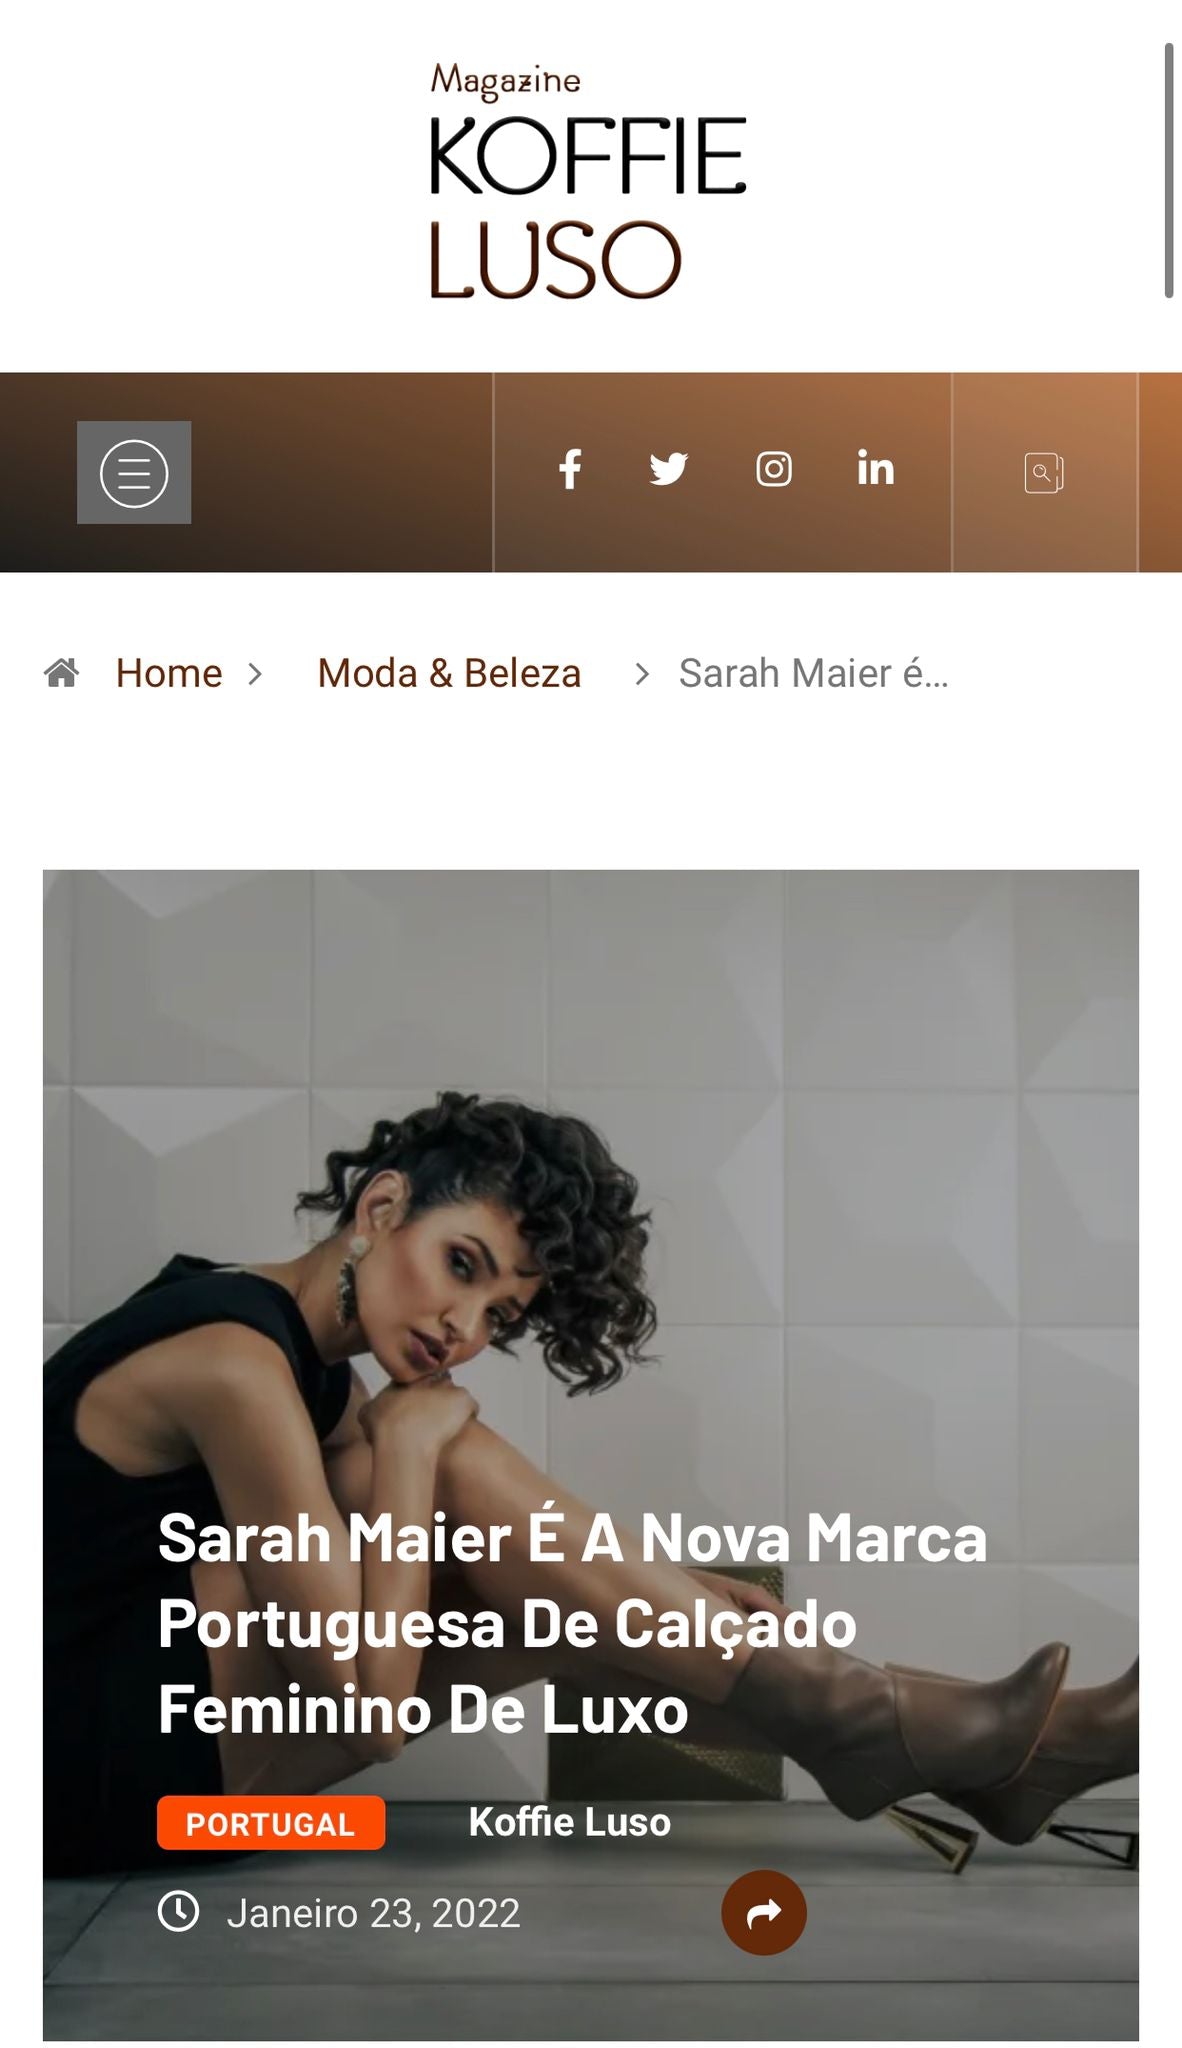 Sarah Maier É A Nova Marca Portuguesa De Calçado Feminino De Luxo